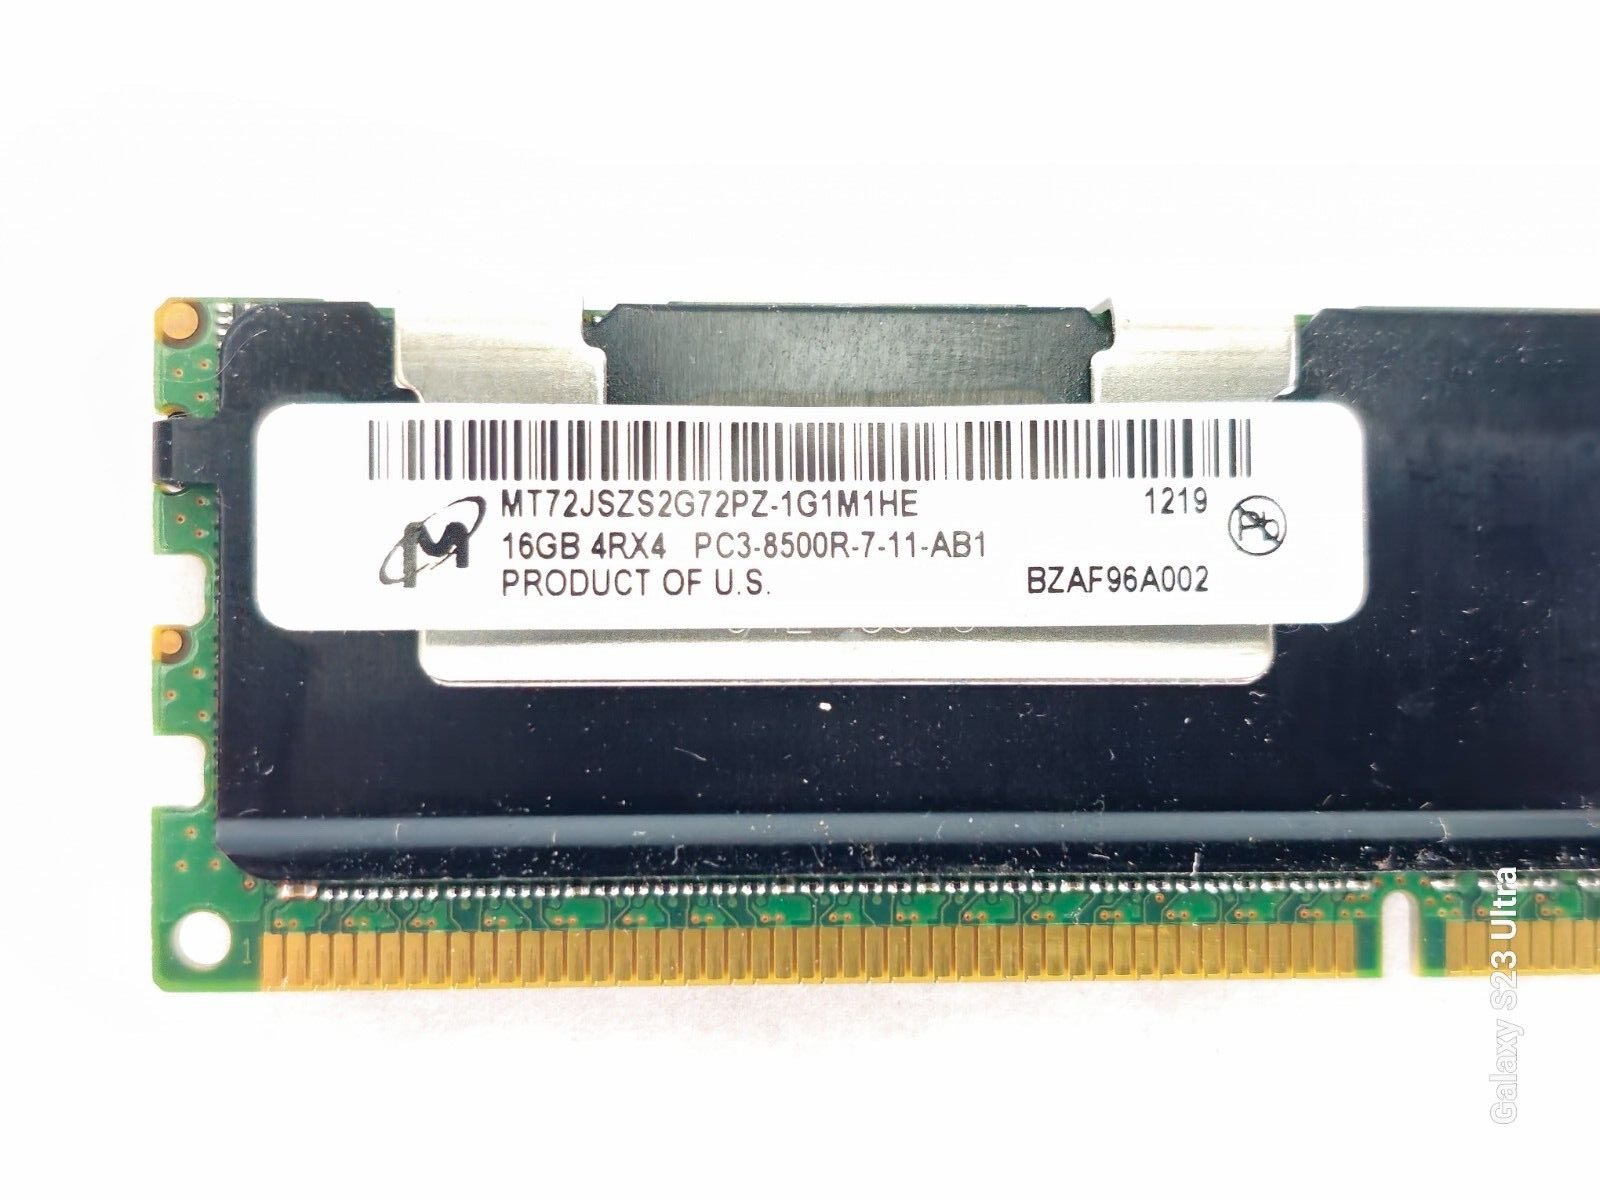 Micron MT72JSZS2G72PZ-1G1M1HE 16GB 4RX4 PC3-8500R-7-11-AB1 Server RAM